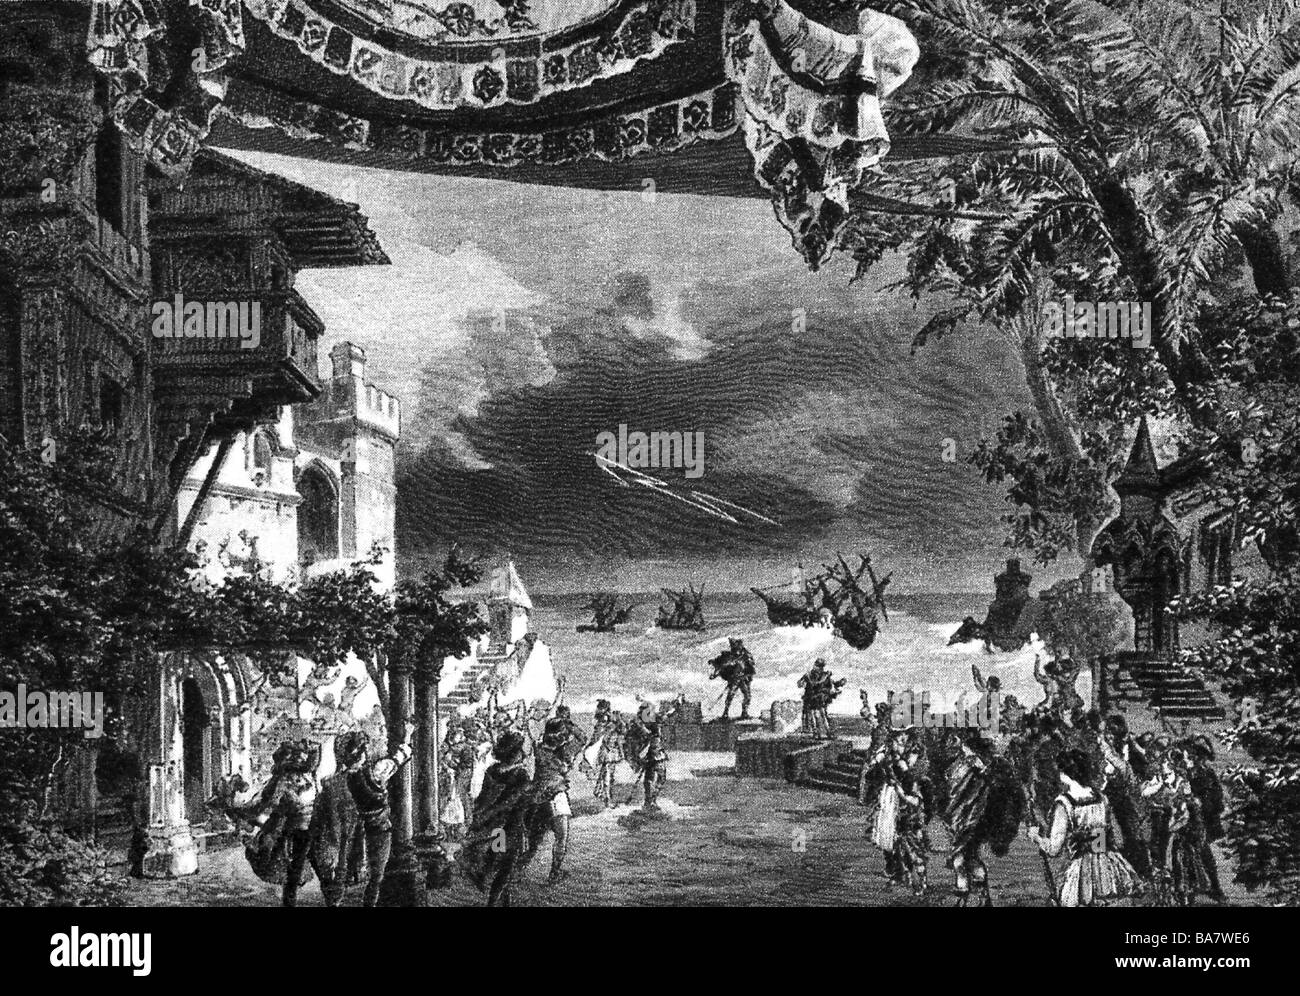 Verdi, Giuseppe, 10.10.13 - 27.1.1901, italienischer Komponist, Werke, Oper "Othello", Premiere, Mailand, 5.2.1887, Sturmszene, Akt 1, Zeichnung von A. Bonamore, Stockfoto